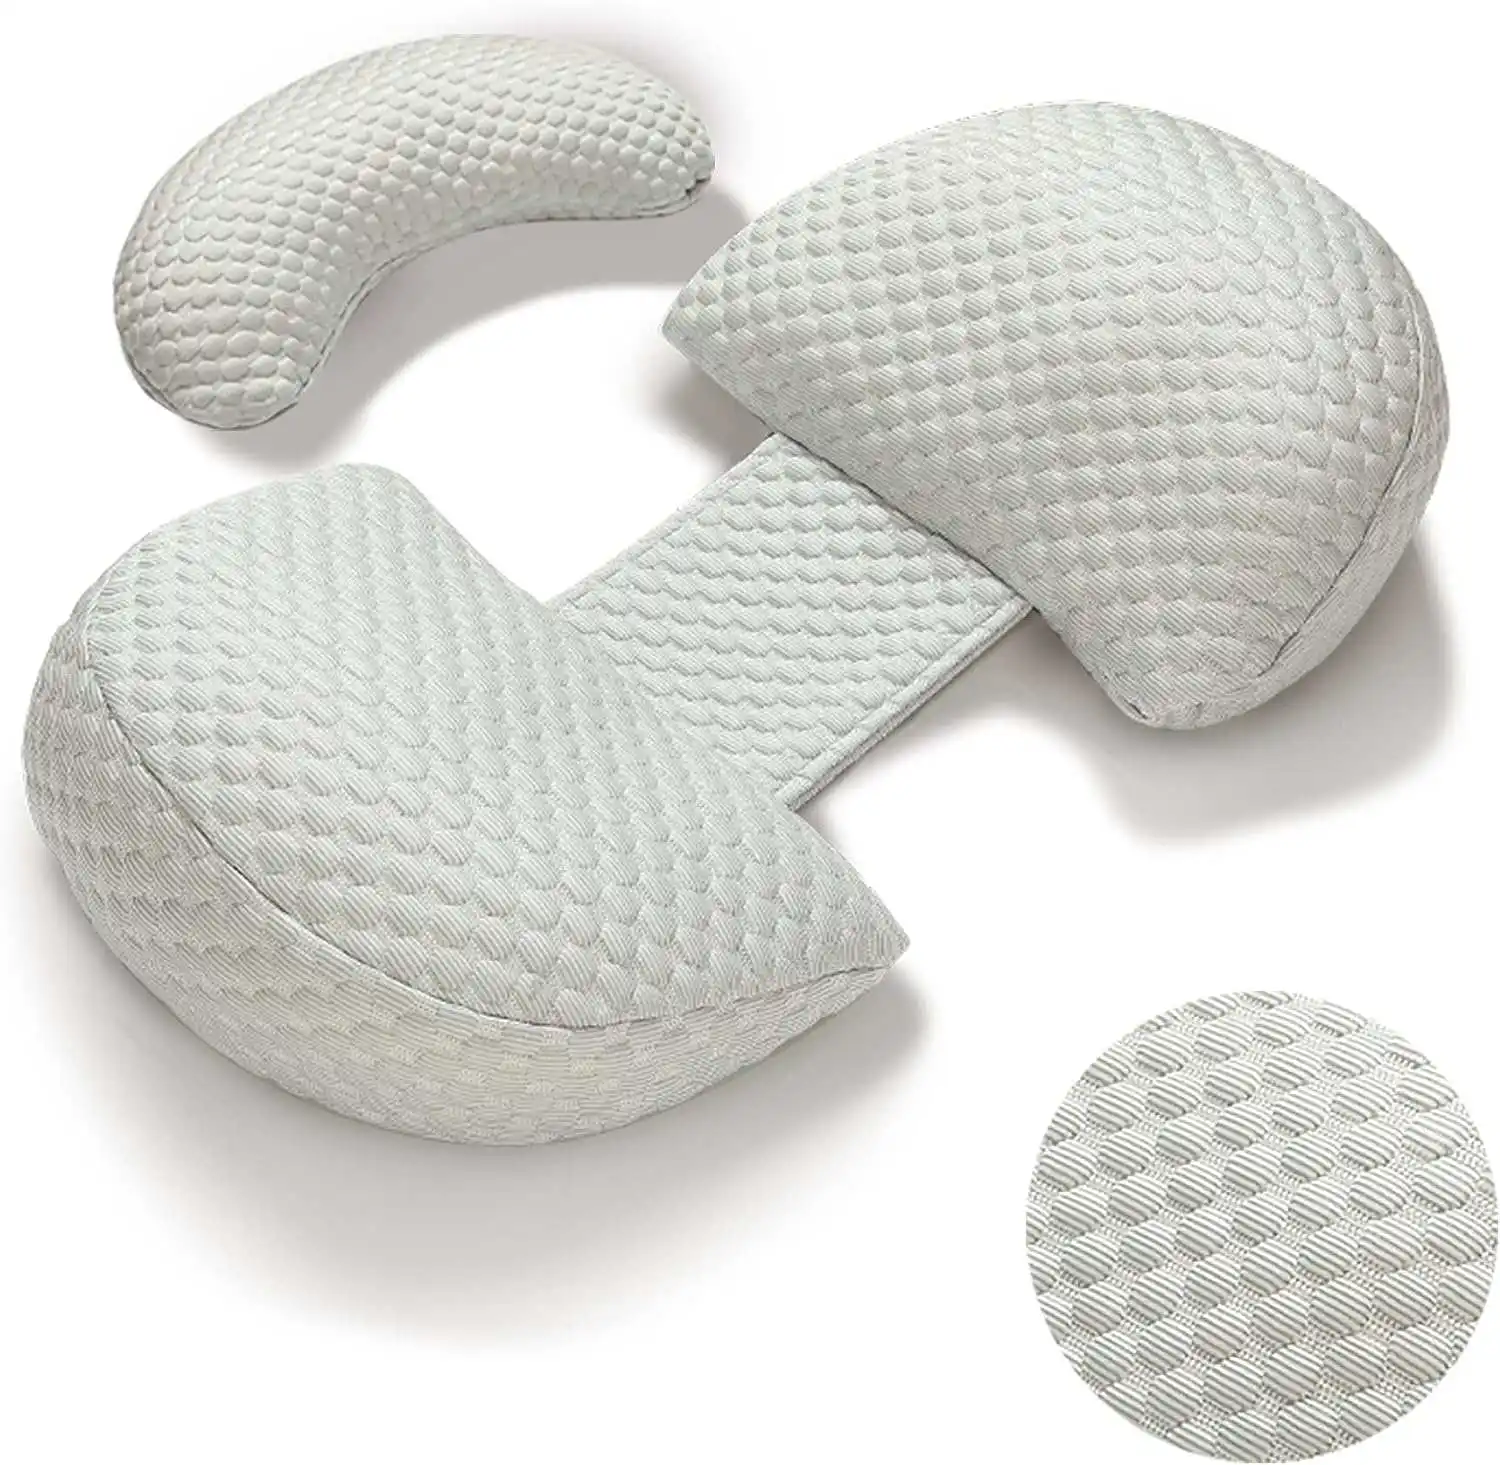 睡眠用妊娠枕、取り外し可能なカバー付きH字型全身マタニティ枕-背中、脚、腹、腰のサポート